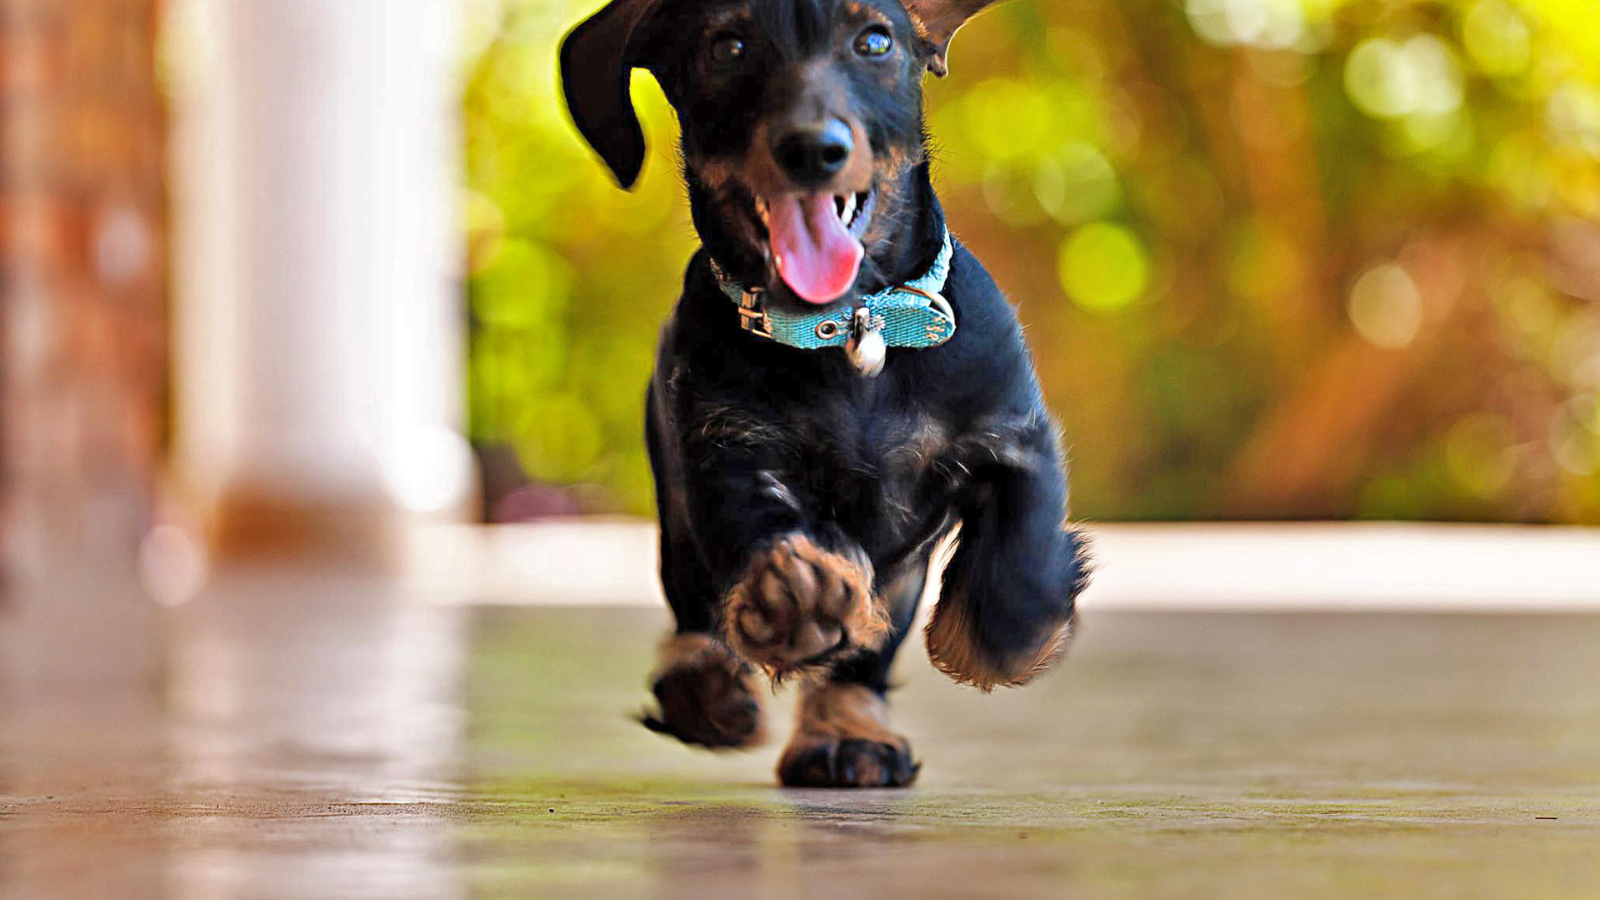 Joyful dachshund runs